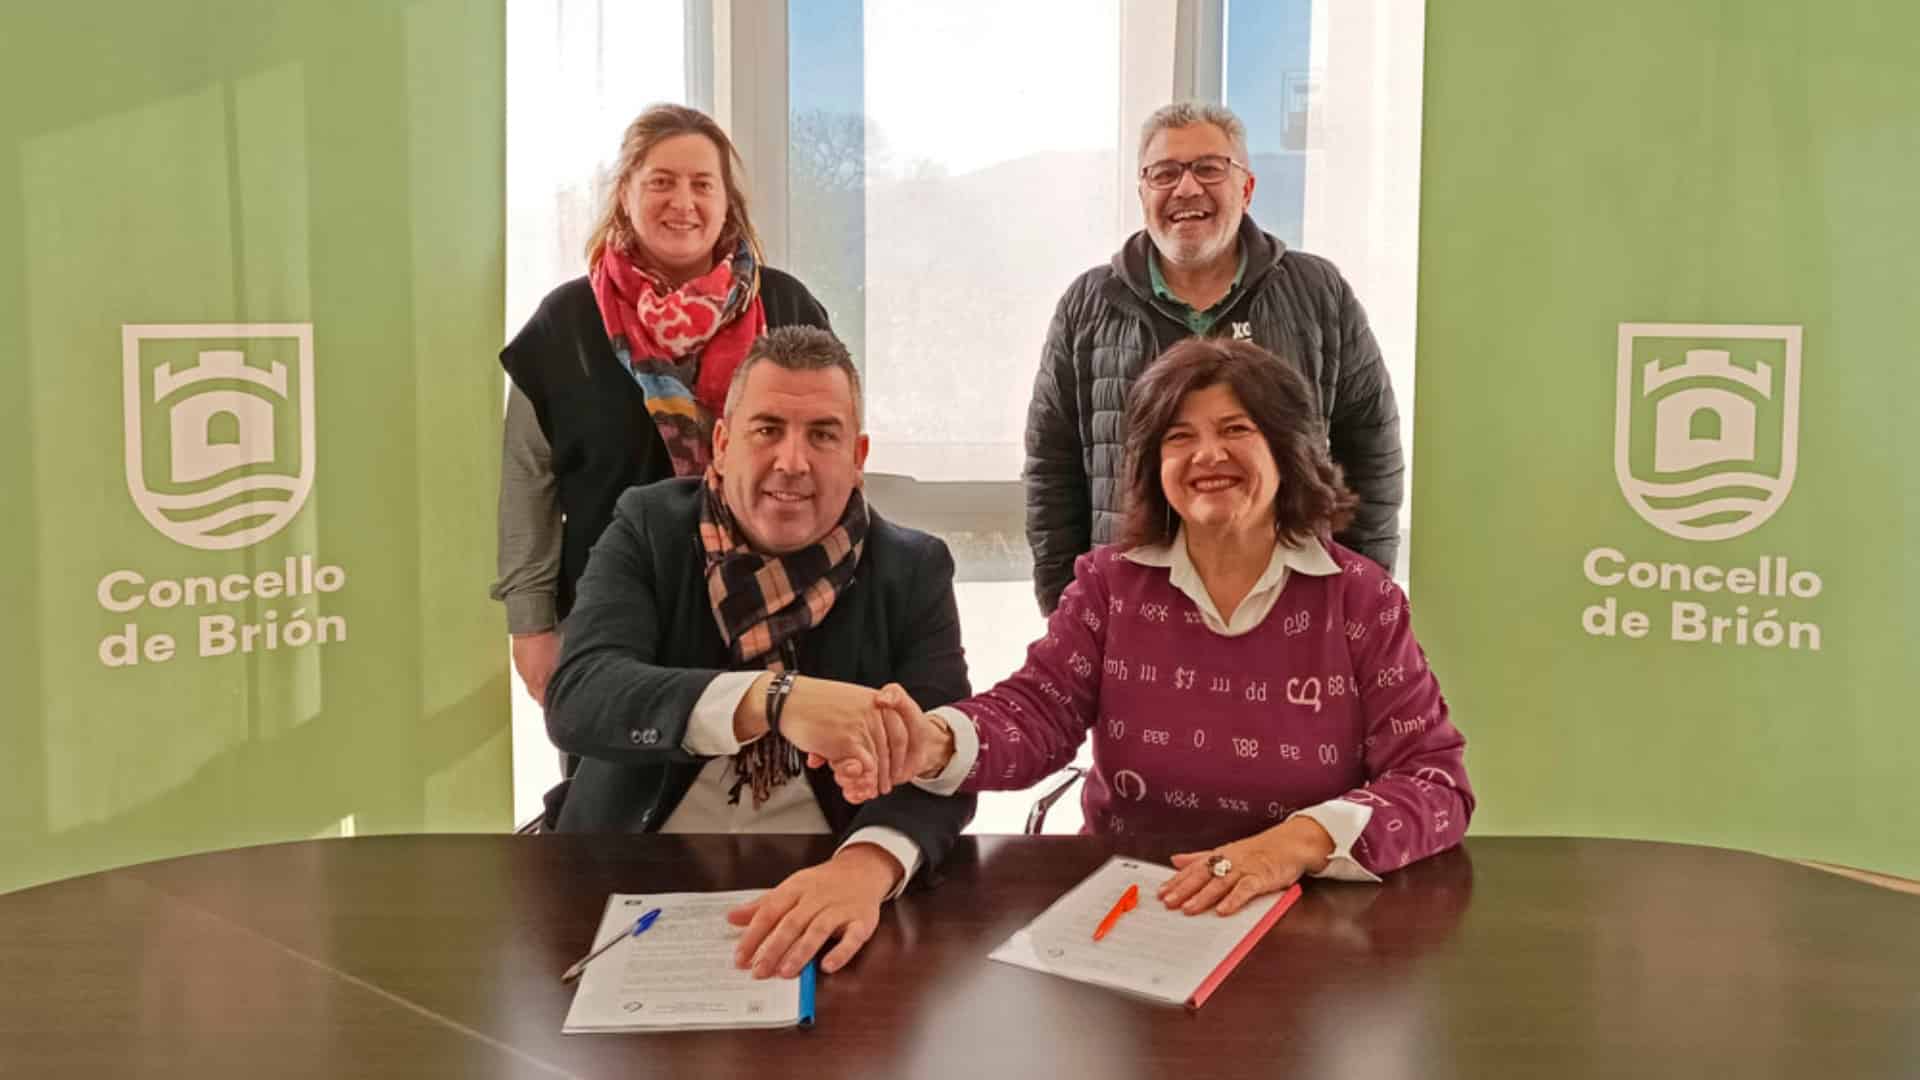 La firma del acuerdo para la celebración de Fegateatro en Brión | CONCELLO DE BRIÓN